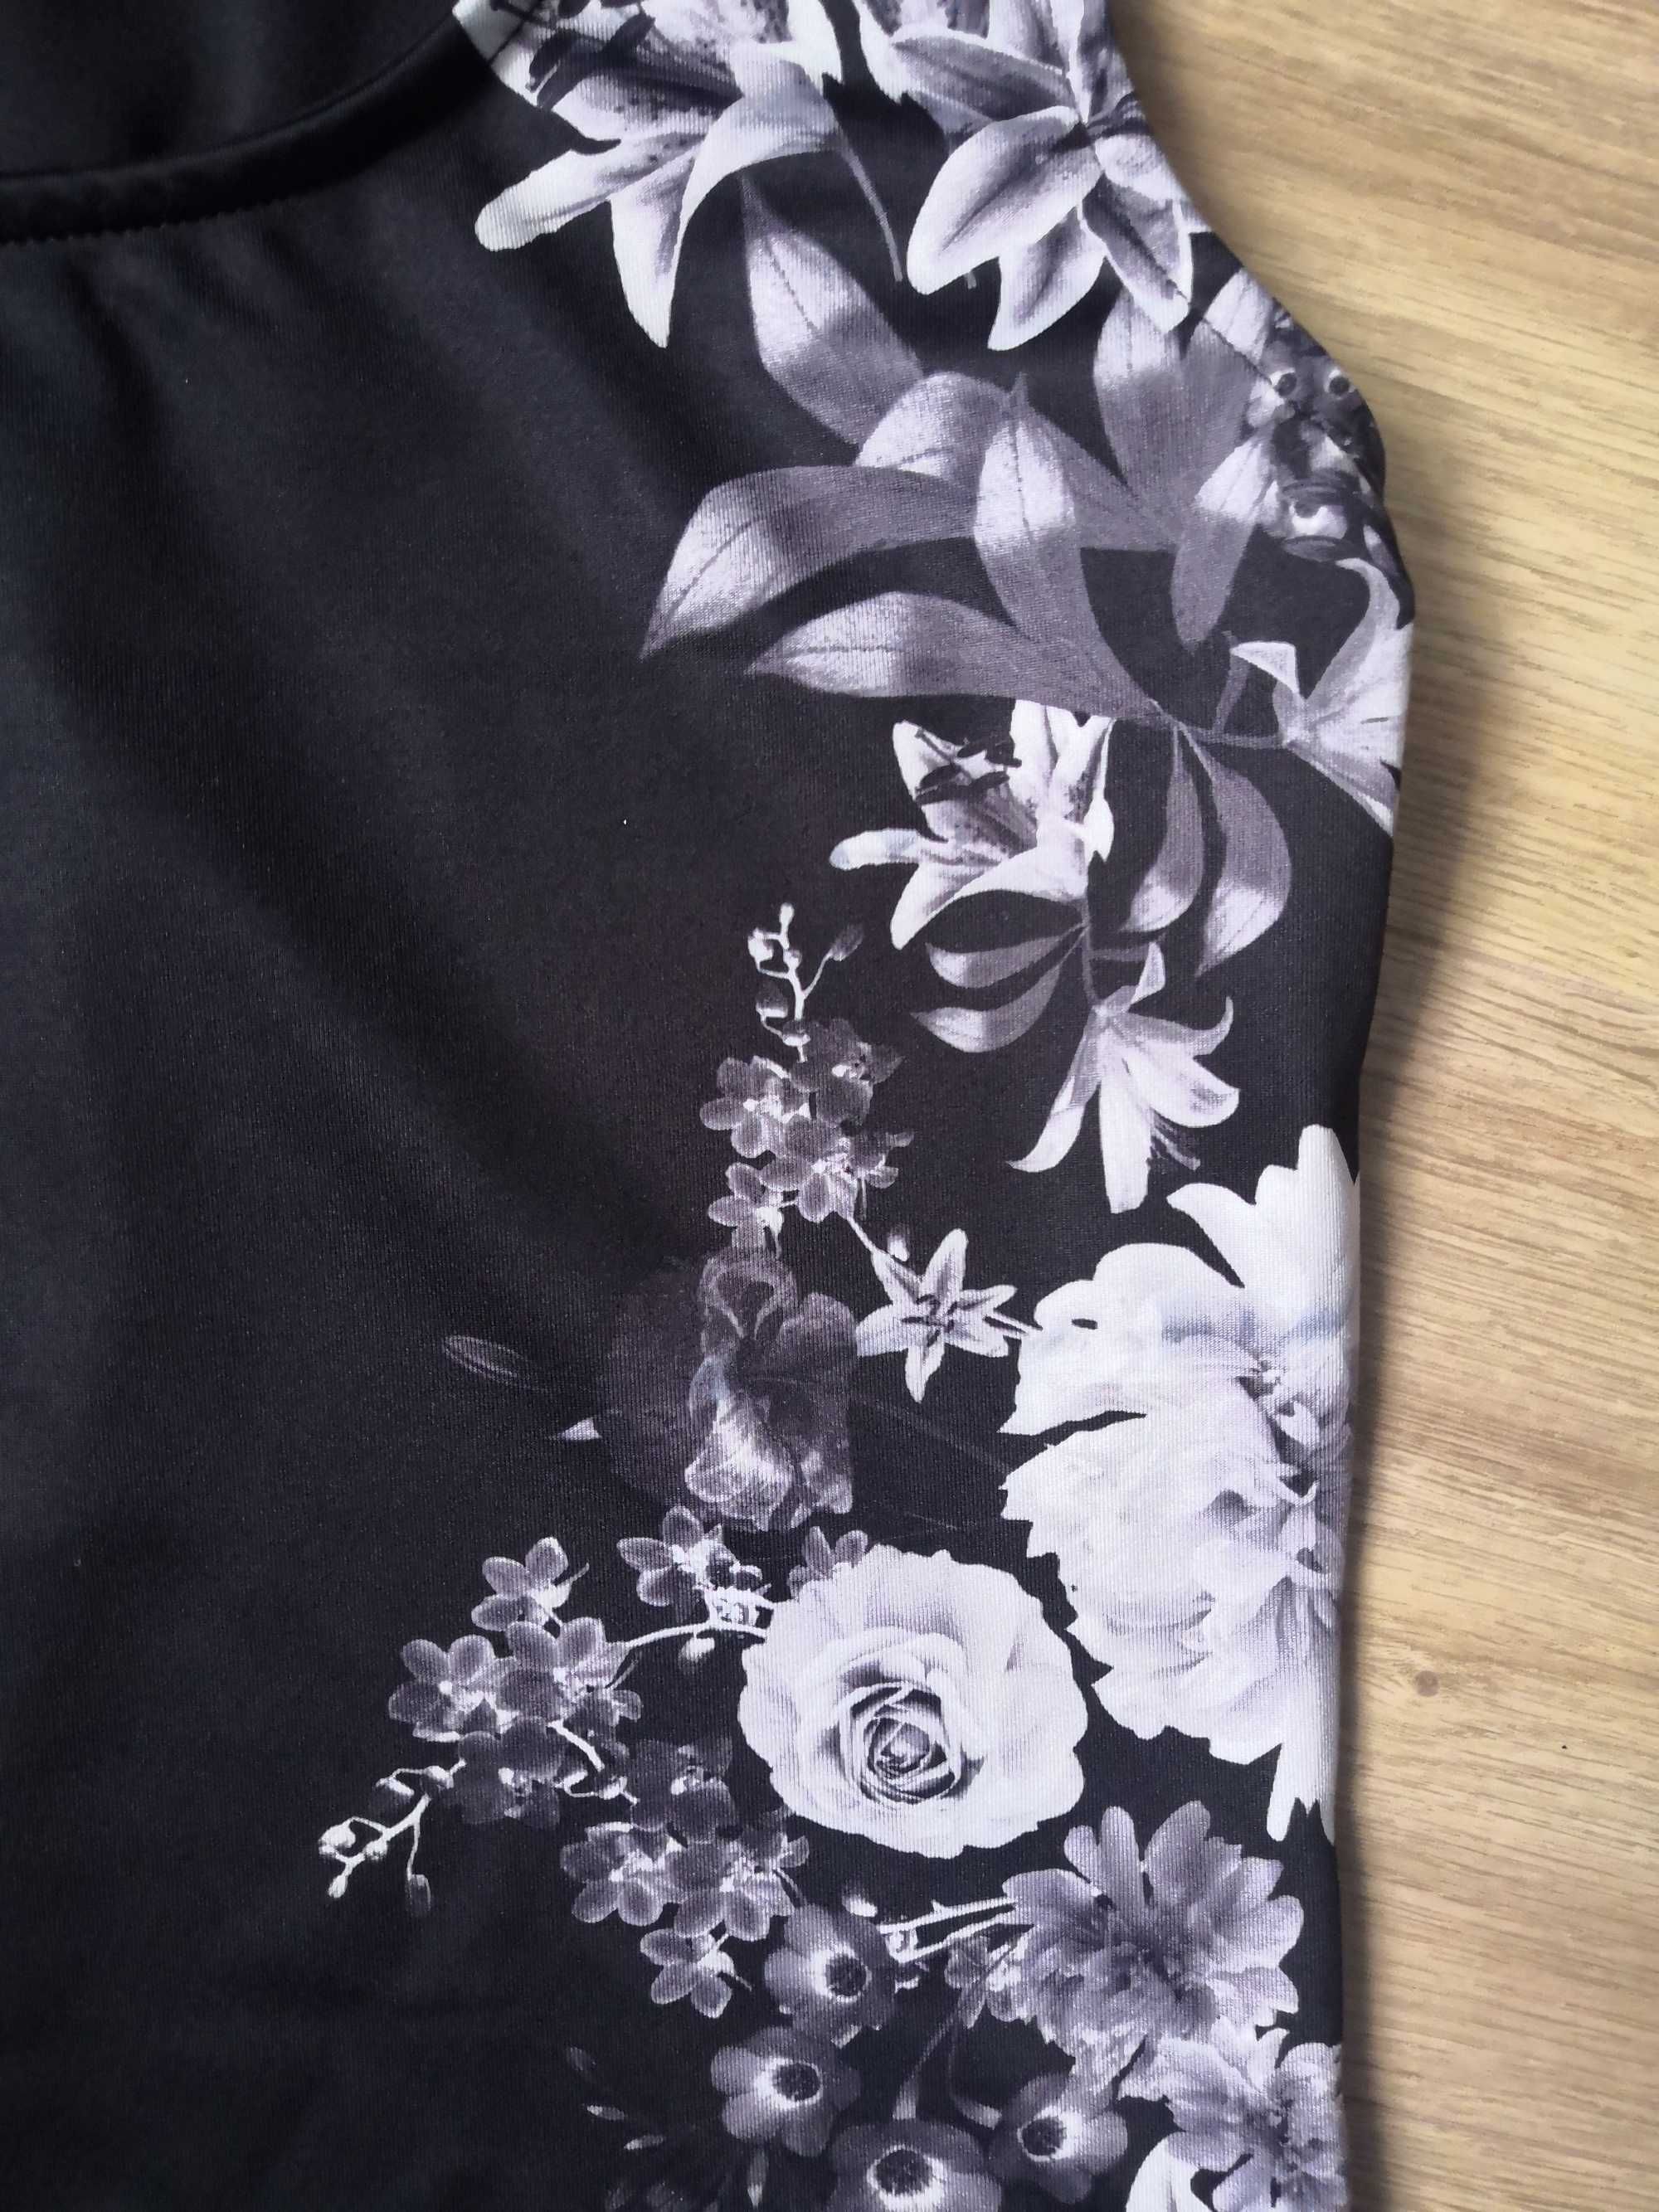 Czarna sukienka mini w kwiaty M/38